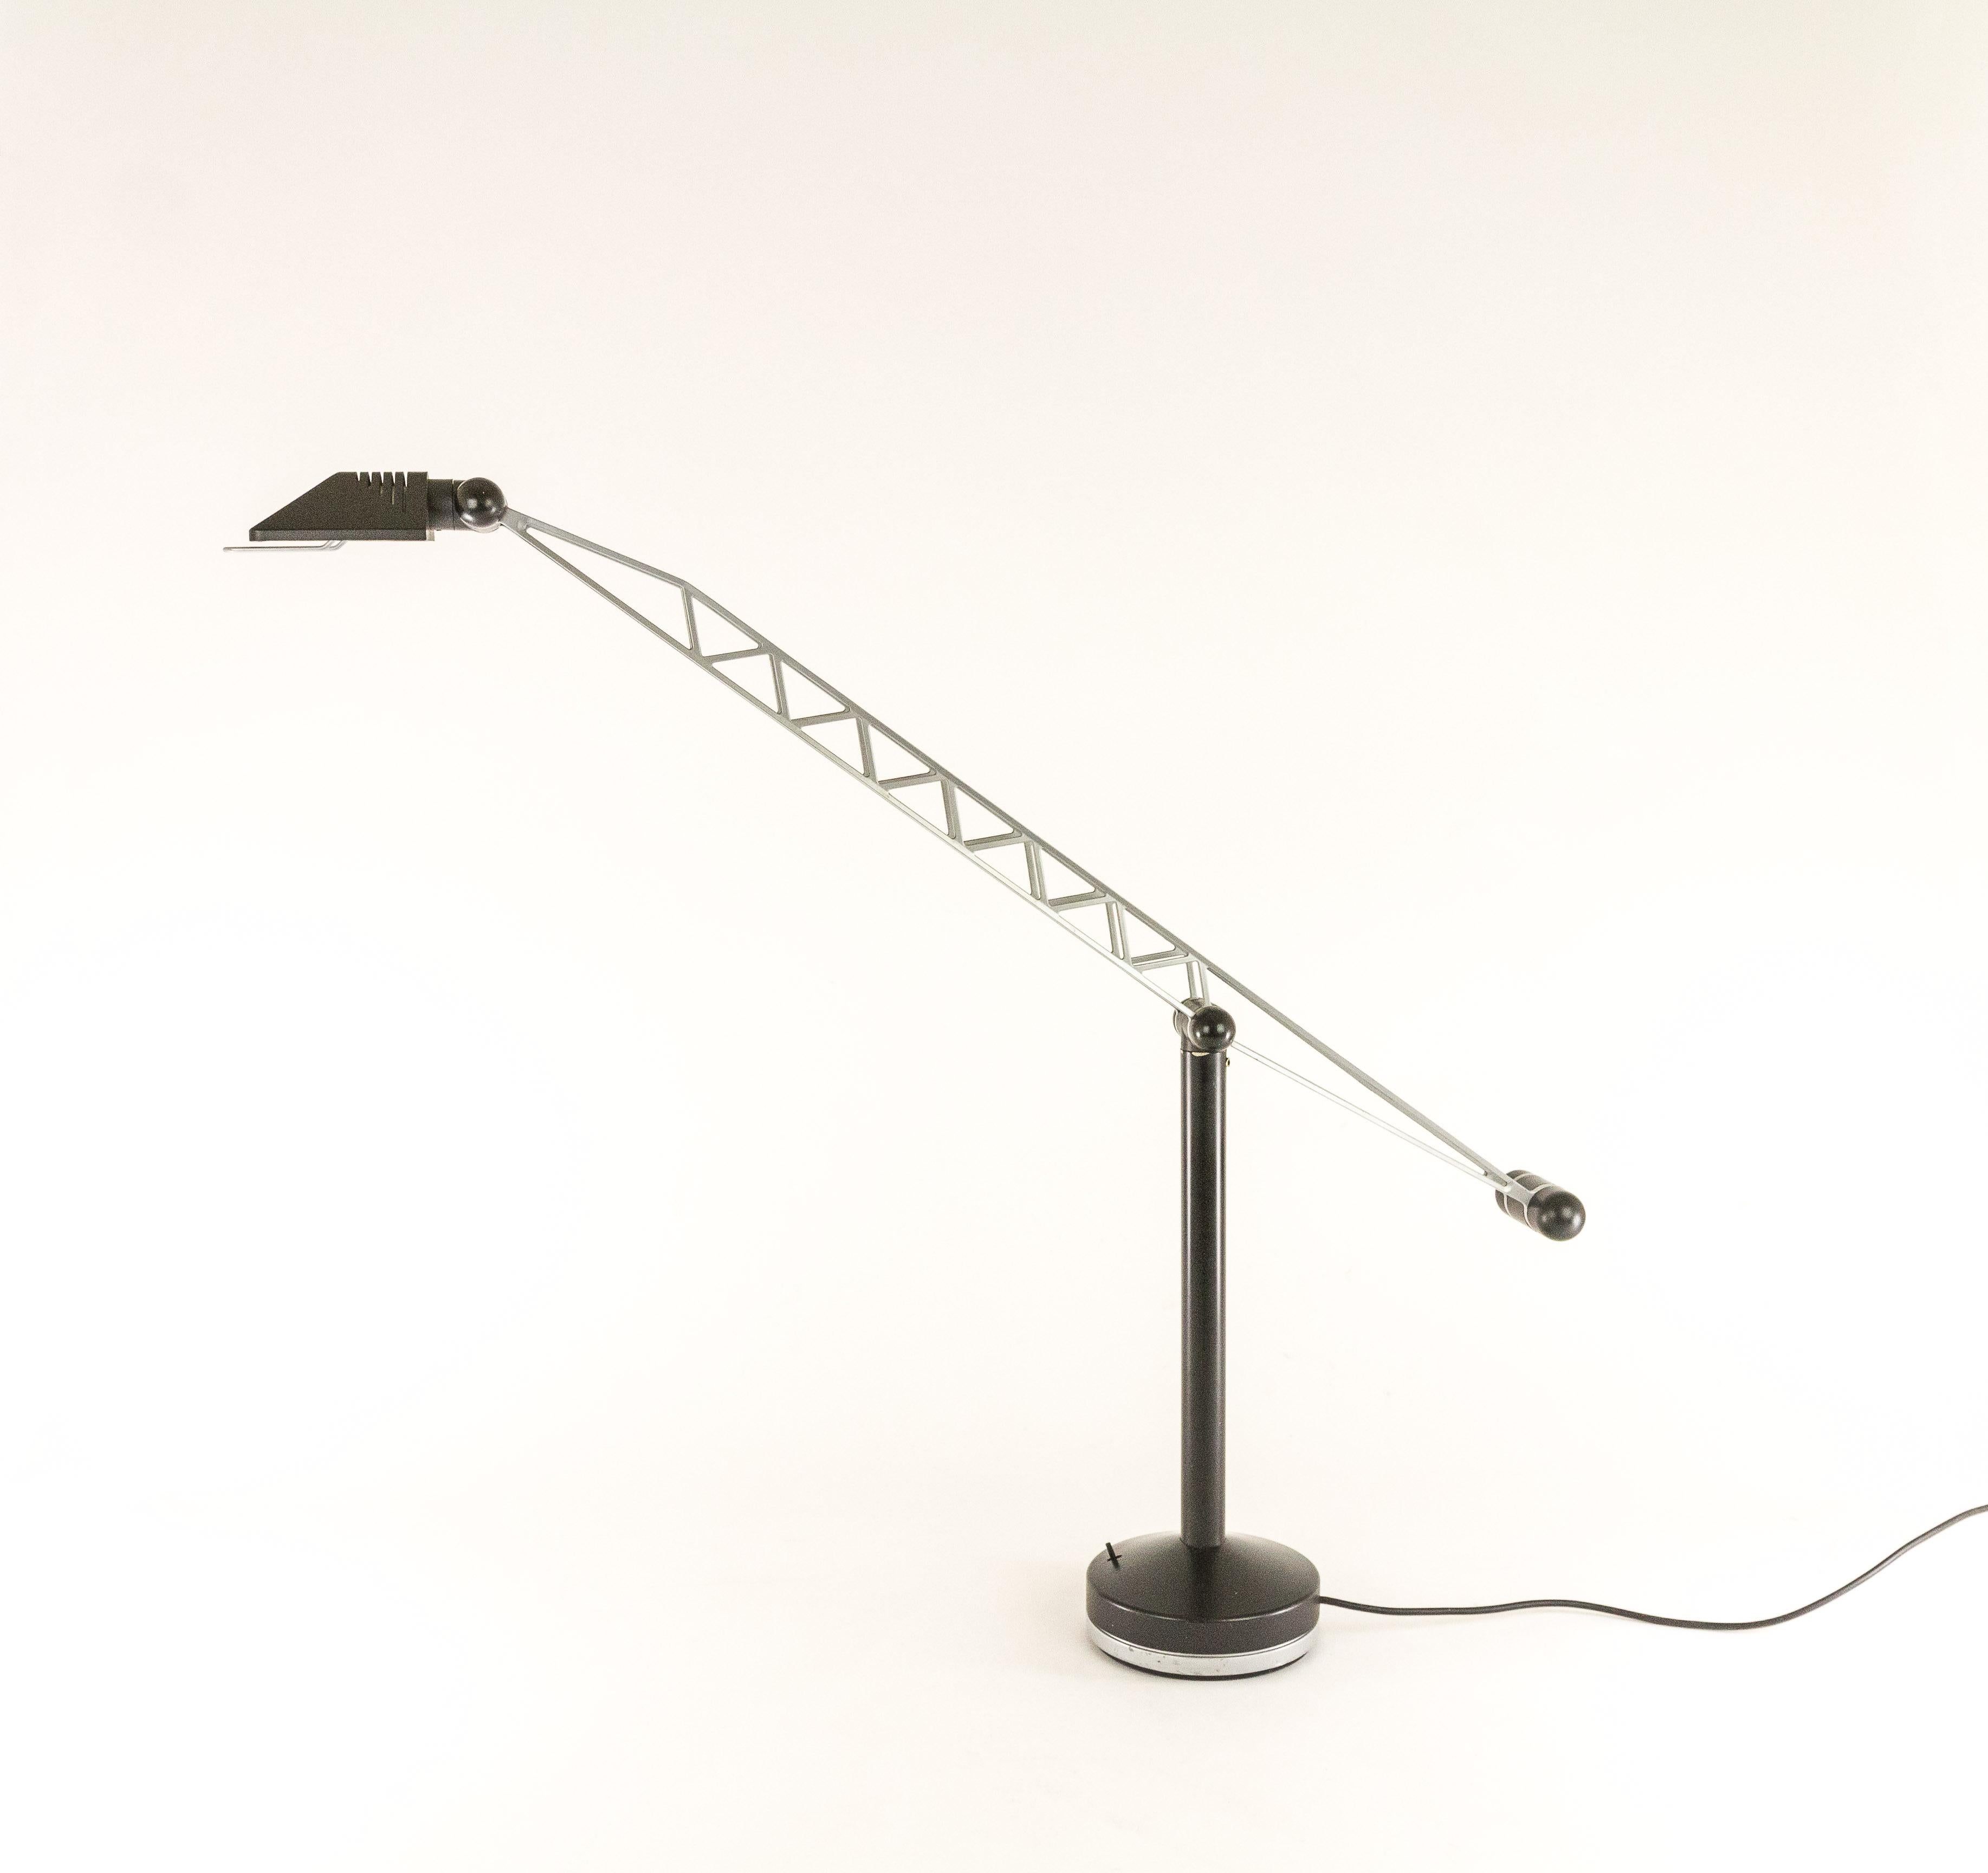 Leader, une lampe de table halogène conçue par Raul Barbieri et Giorgio Marianelli pour Tronconi de Milan, Italie.

Les lampes ont été conçues au milieu des années 1980. Elle est réglable dans toutes les directions et relativement grande pour une